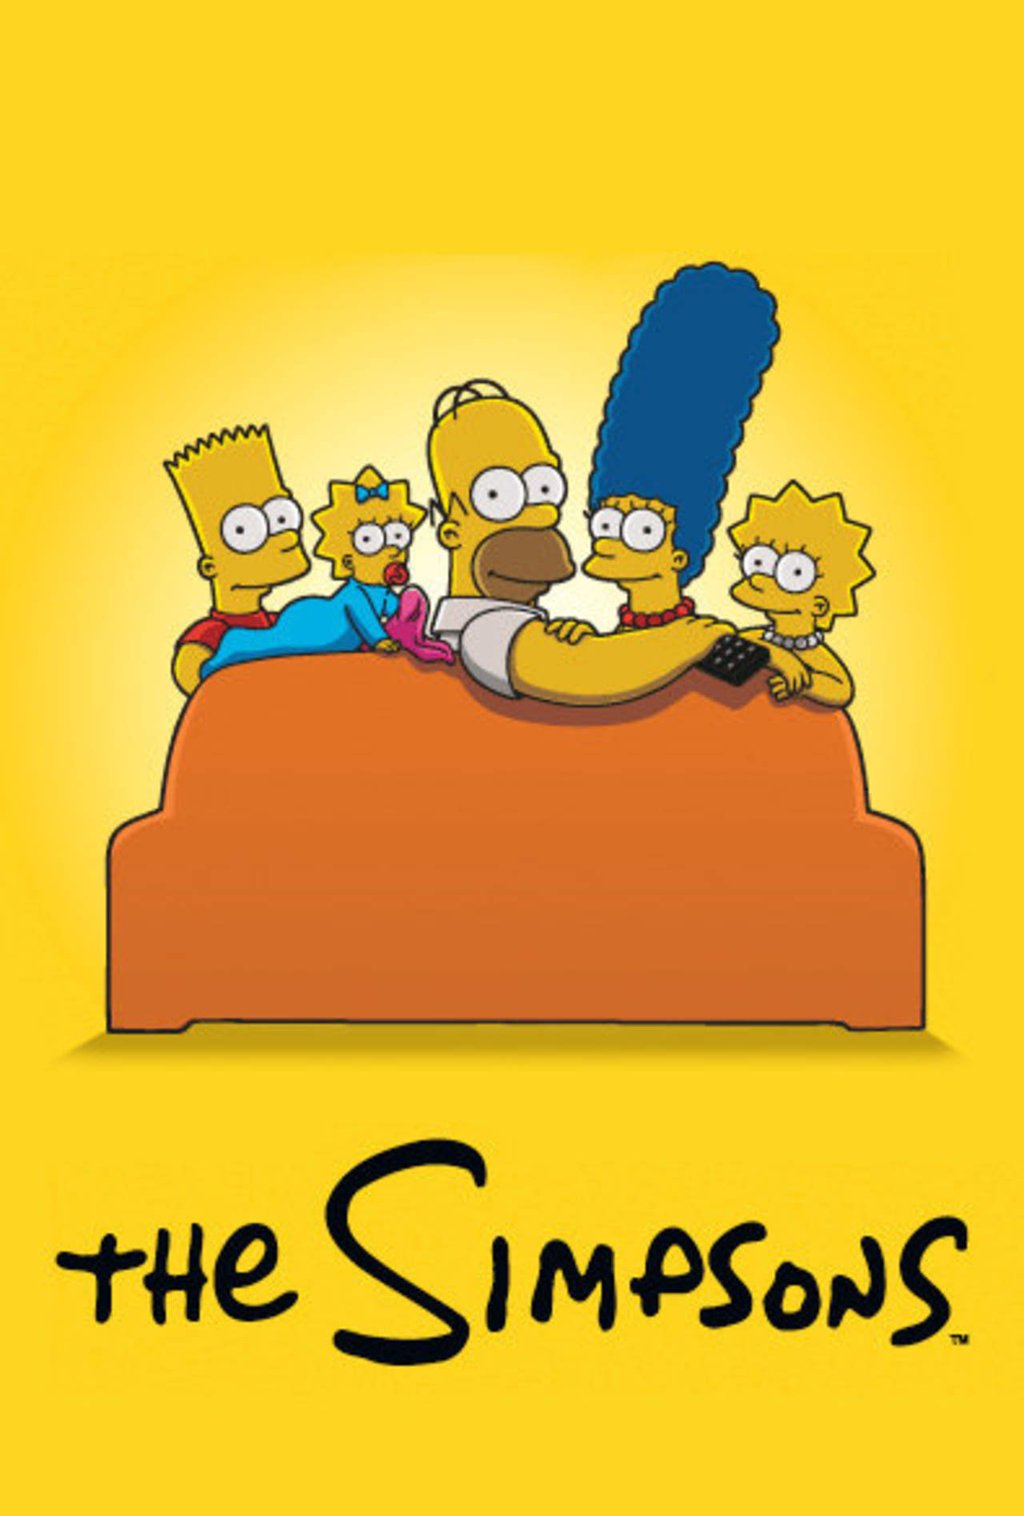 Presentarán episodio especial de Los Simpson